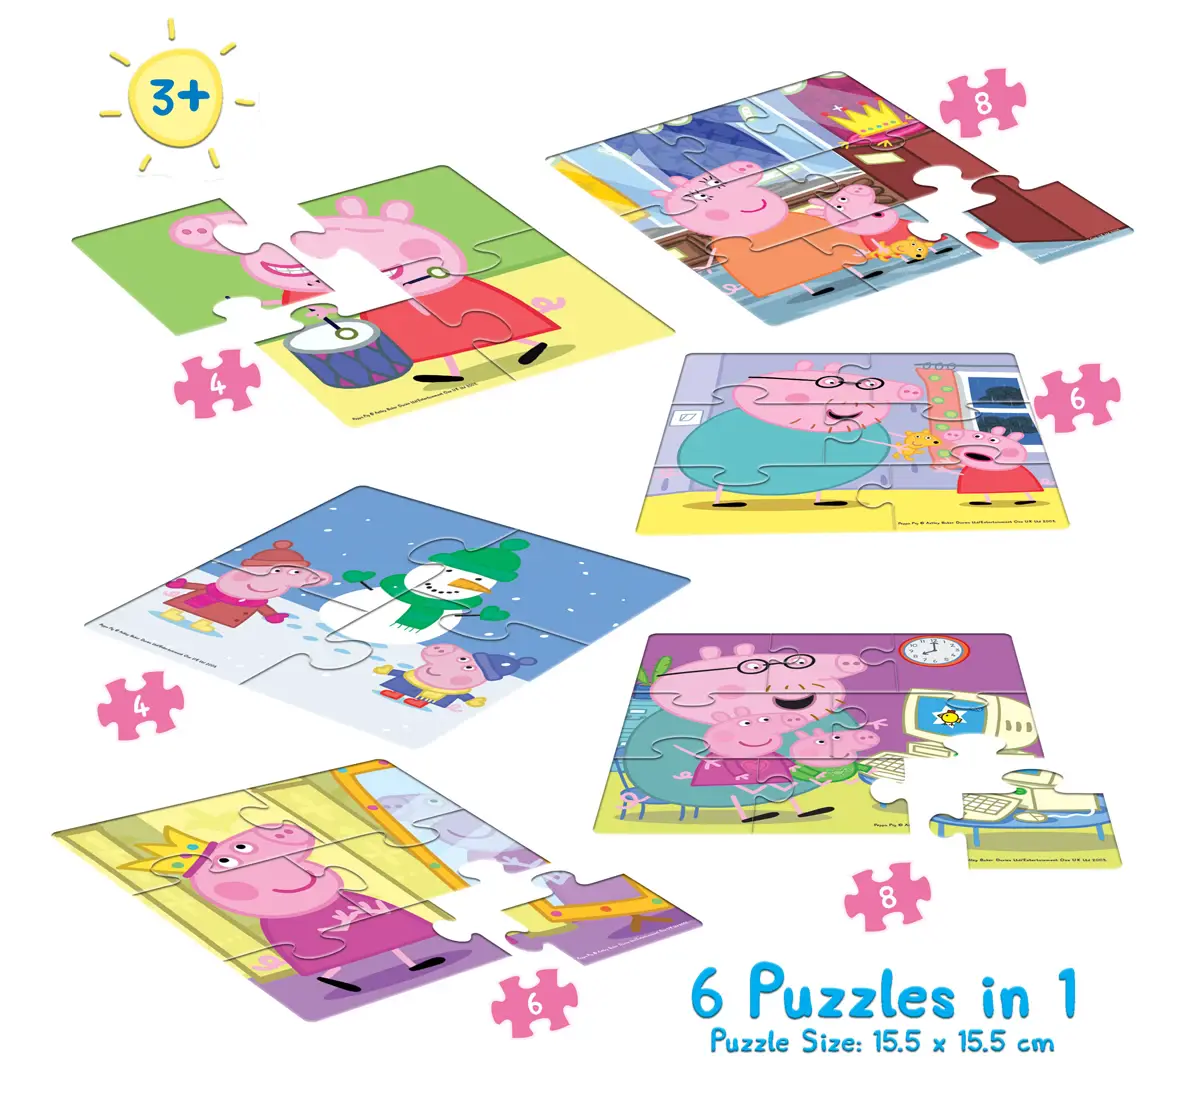 Frank Peppa Pig 6 In 1 Floor Puzzles Multicolor 3Y+